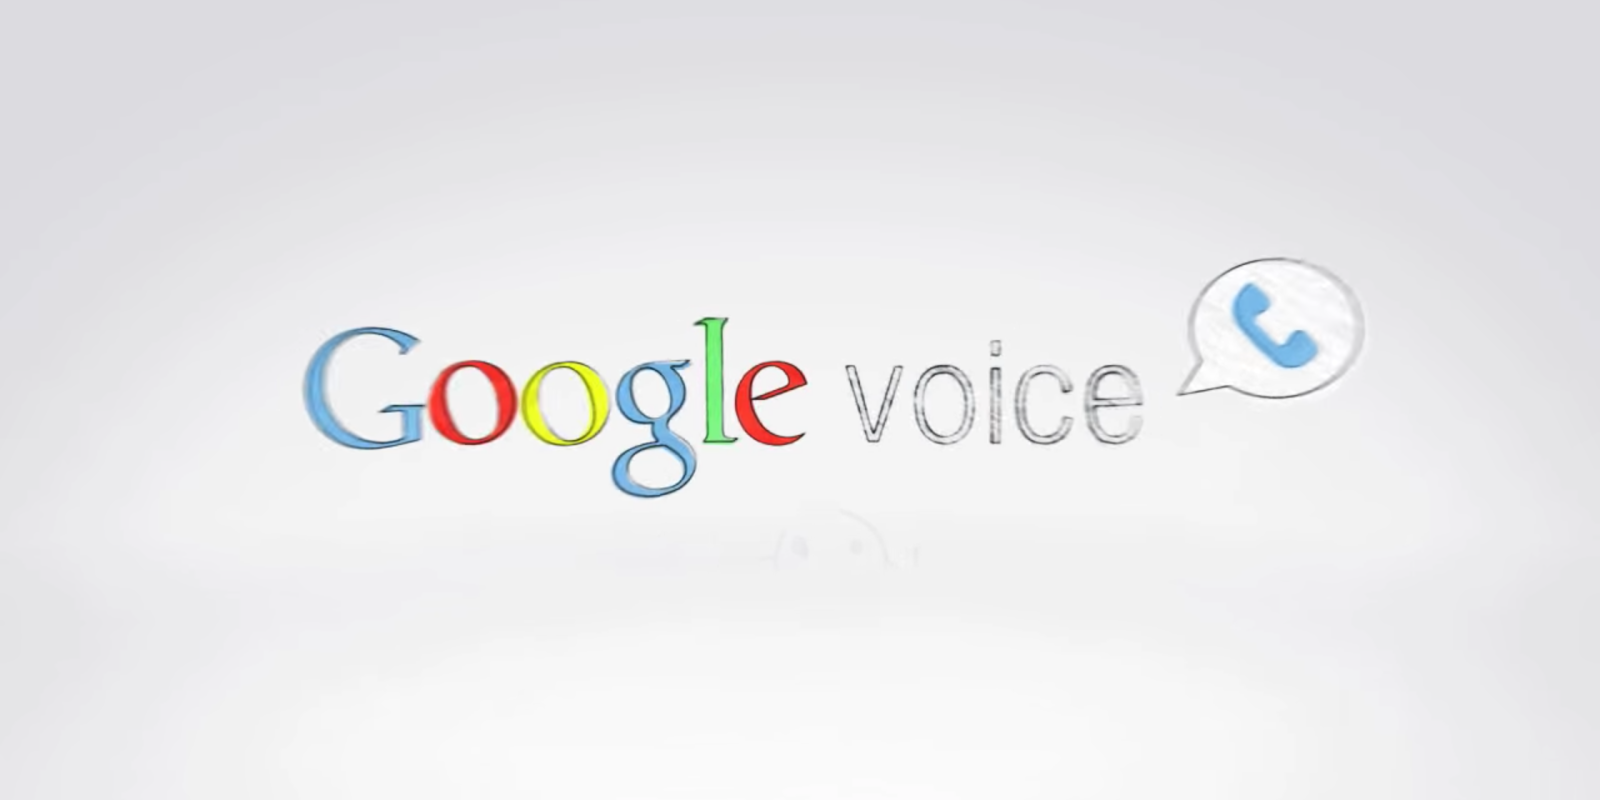 google tts voices download